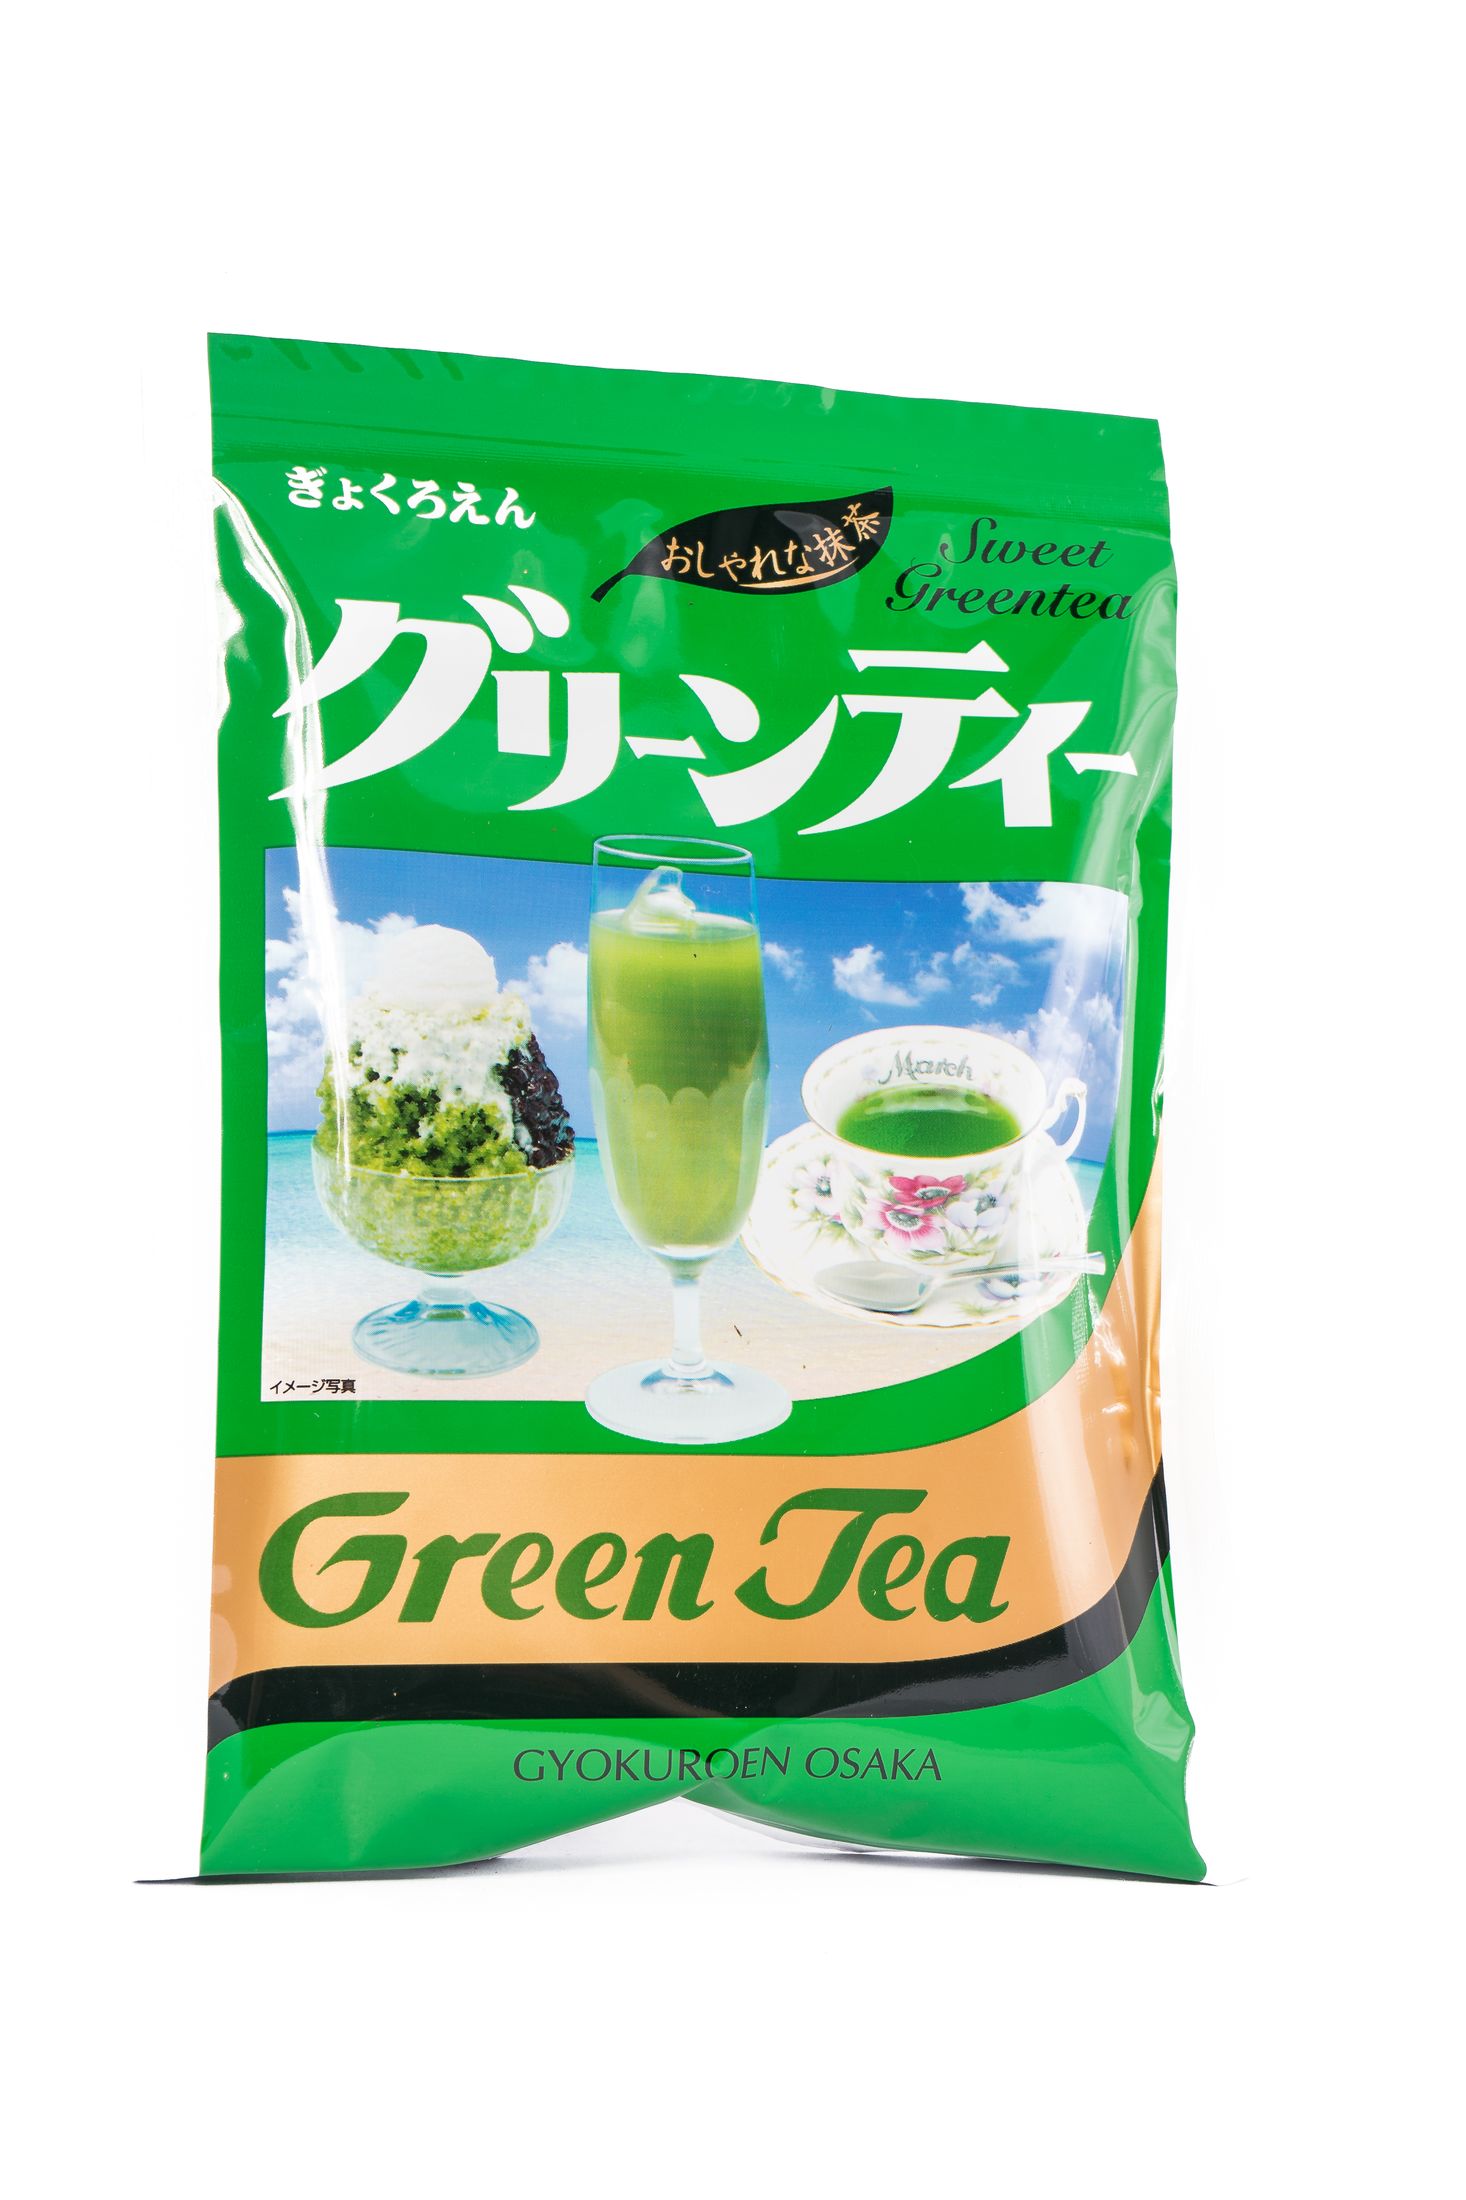 Osaka Gyokuroen Groene thee poeder (matcha)